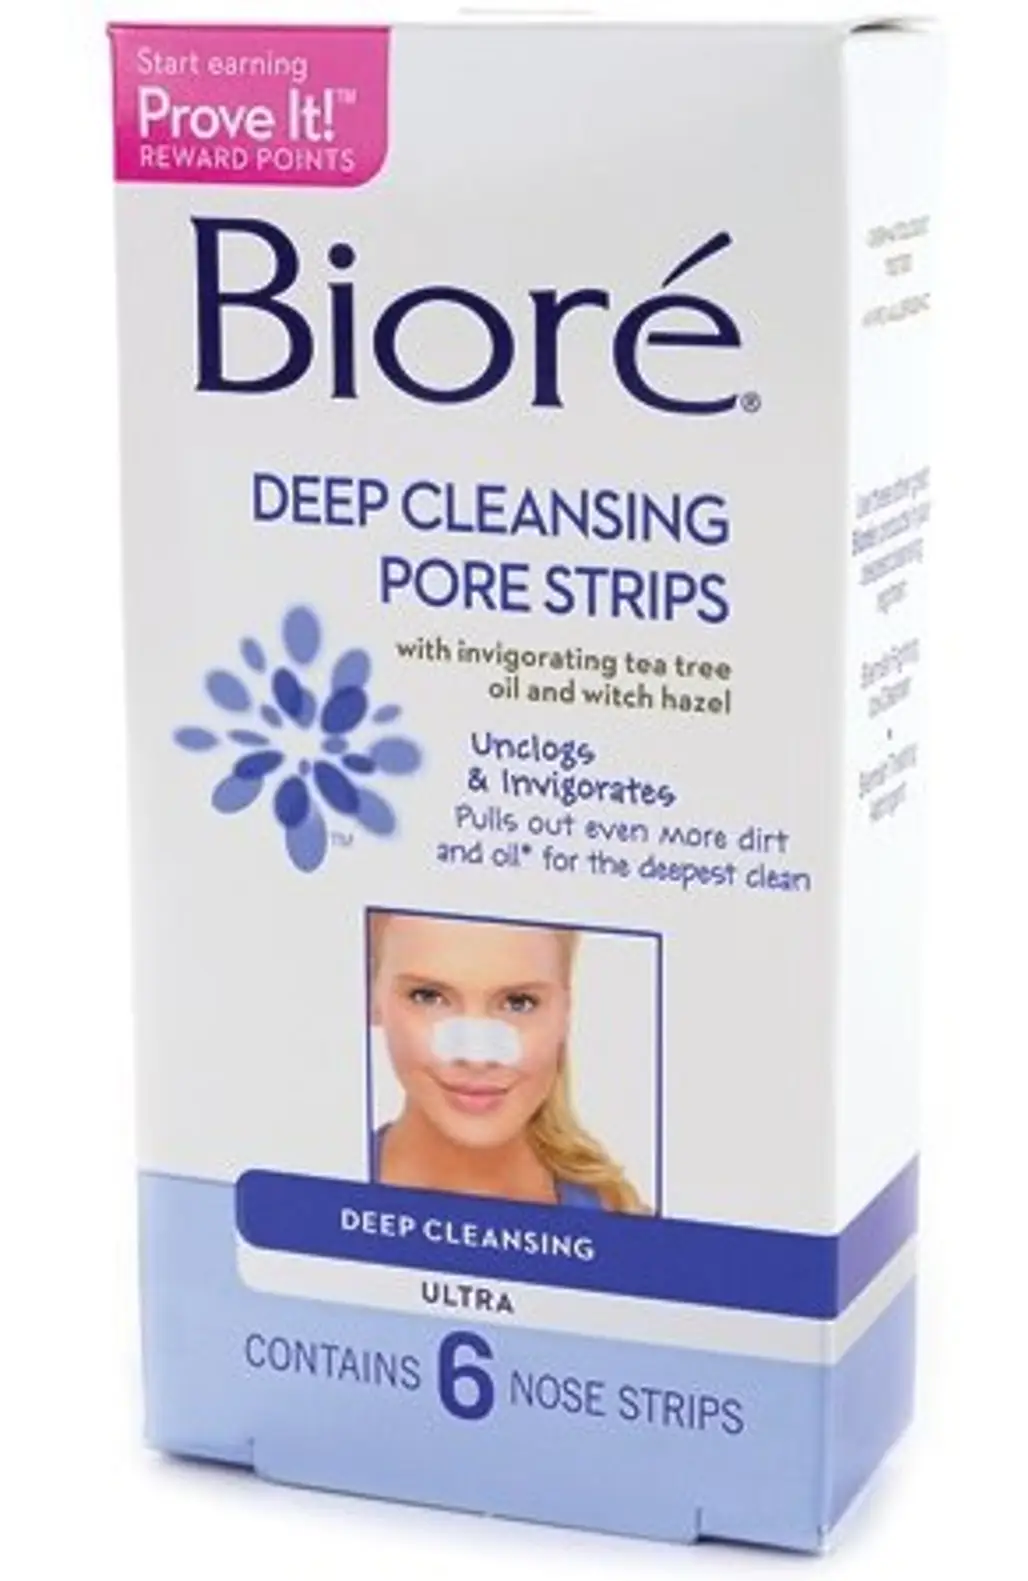 Bioré Ultra Deep Cleansing Pore Strips for Nose